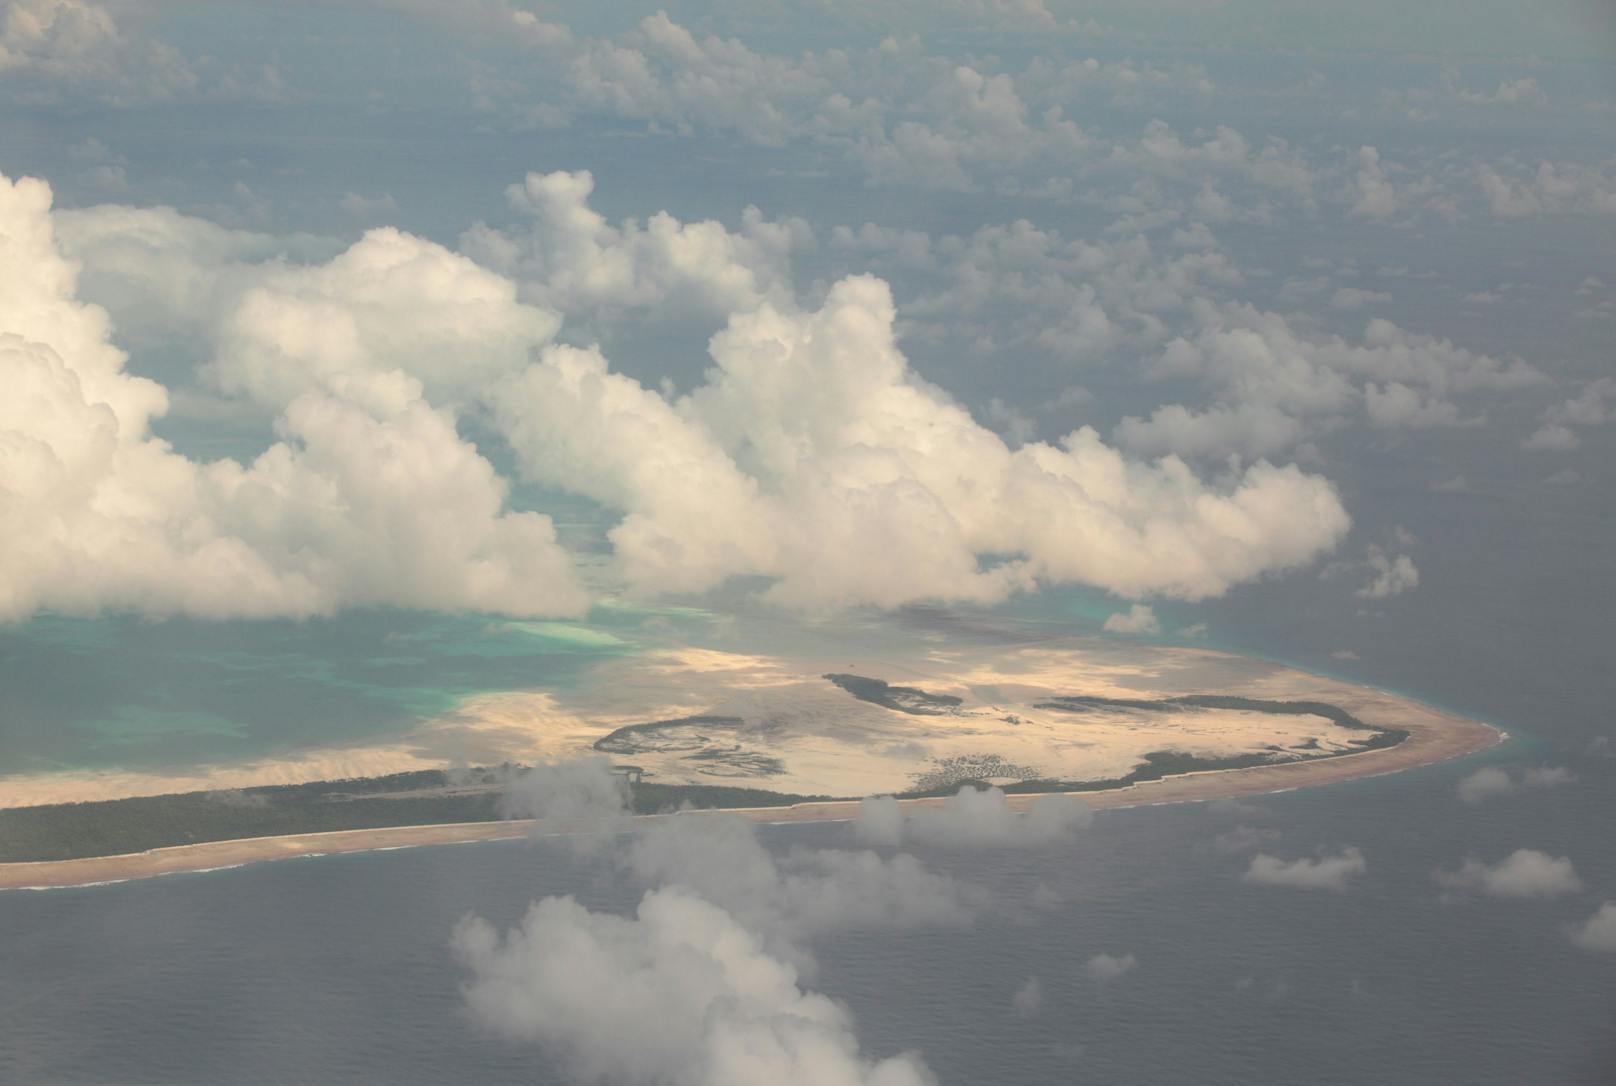 <strong>KIRIBATI:</strong> Die Bevölkerung der Inselrepublik im zentralen Pazifik ist weit verstreut, rund 120.000 Menschen leben auf 33 Korallenatollen und Inseln entlang des Äquators. Eine Einreise für Ausländer ist derzeit nicht möglich, es bestehen außerdem Einreisebeschränkungen für Reisende aus allen Ländern mit aktiver Covid-19-Übertragung. Auch eine Durch- und Weiterreise über Kiribati ist nicht möglich.<br>